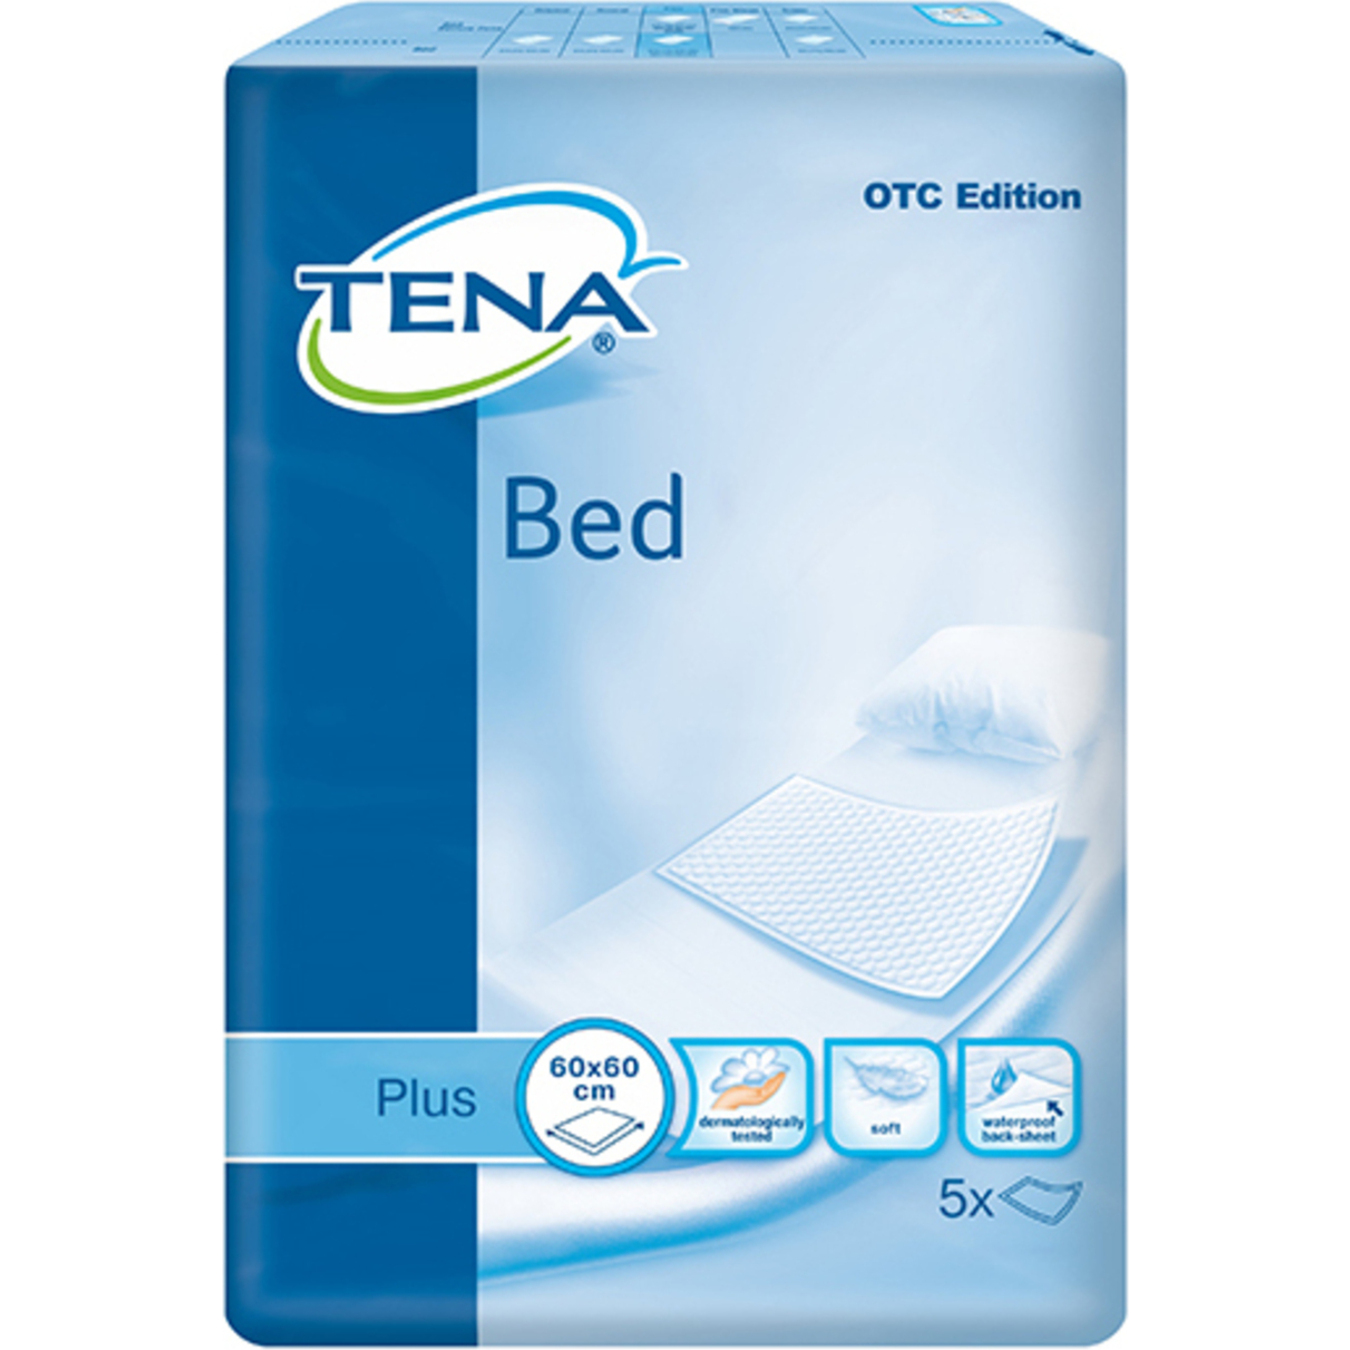 Tena Bed Plus Absorbent Diapers 60х60 5pcs